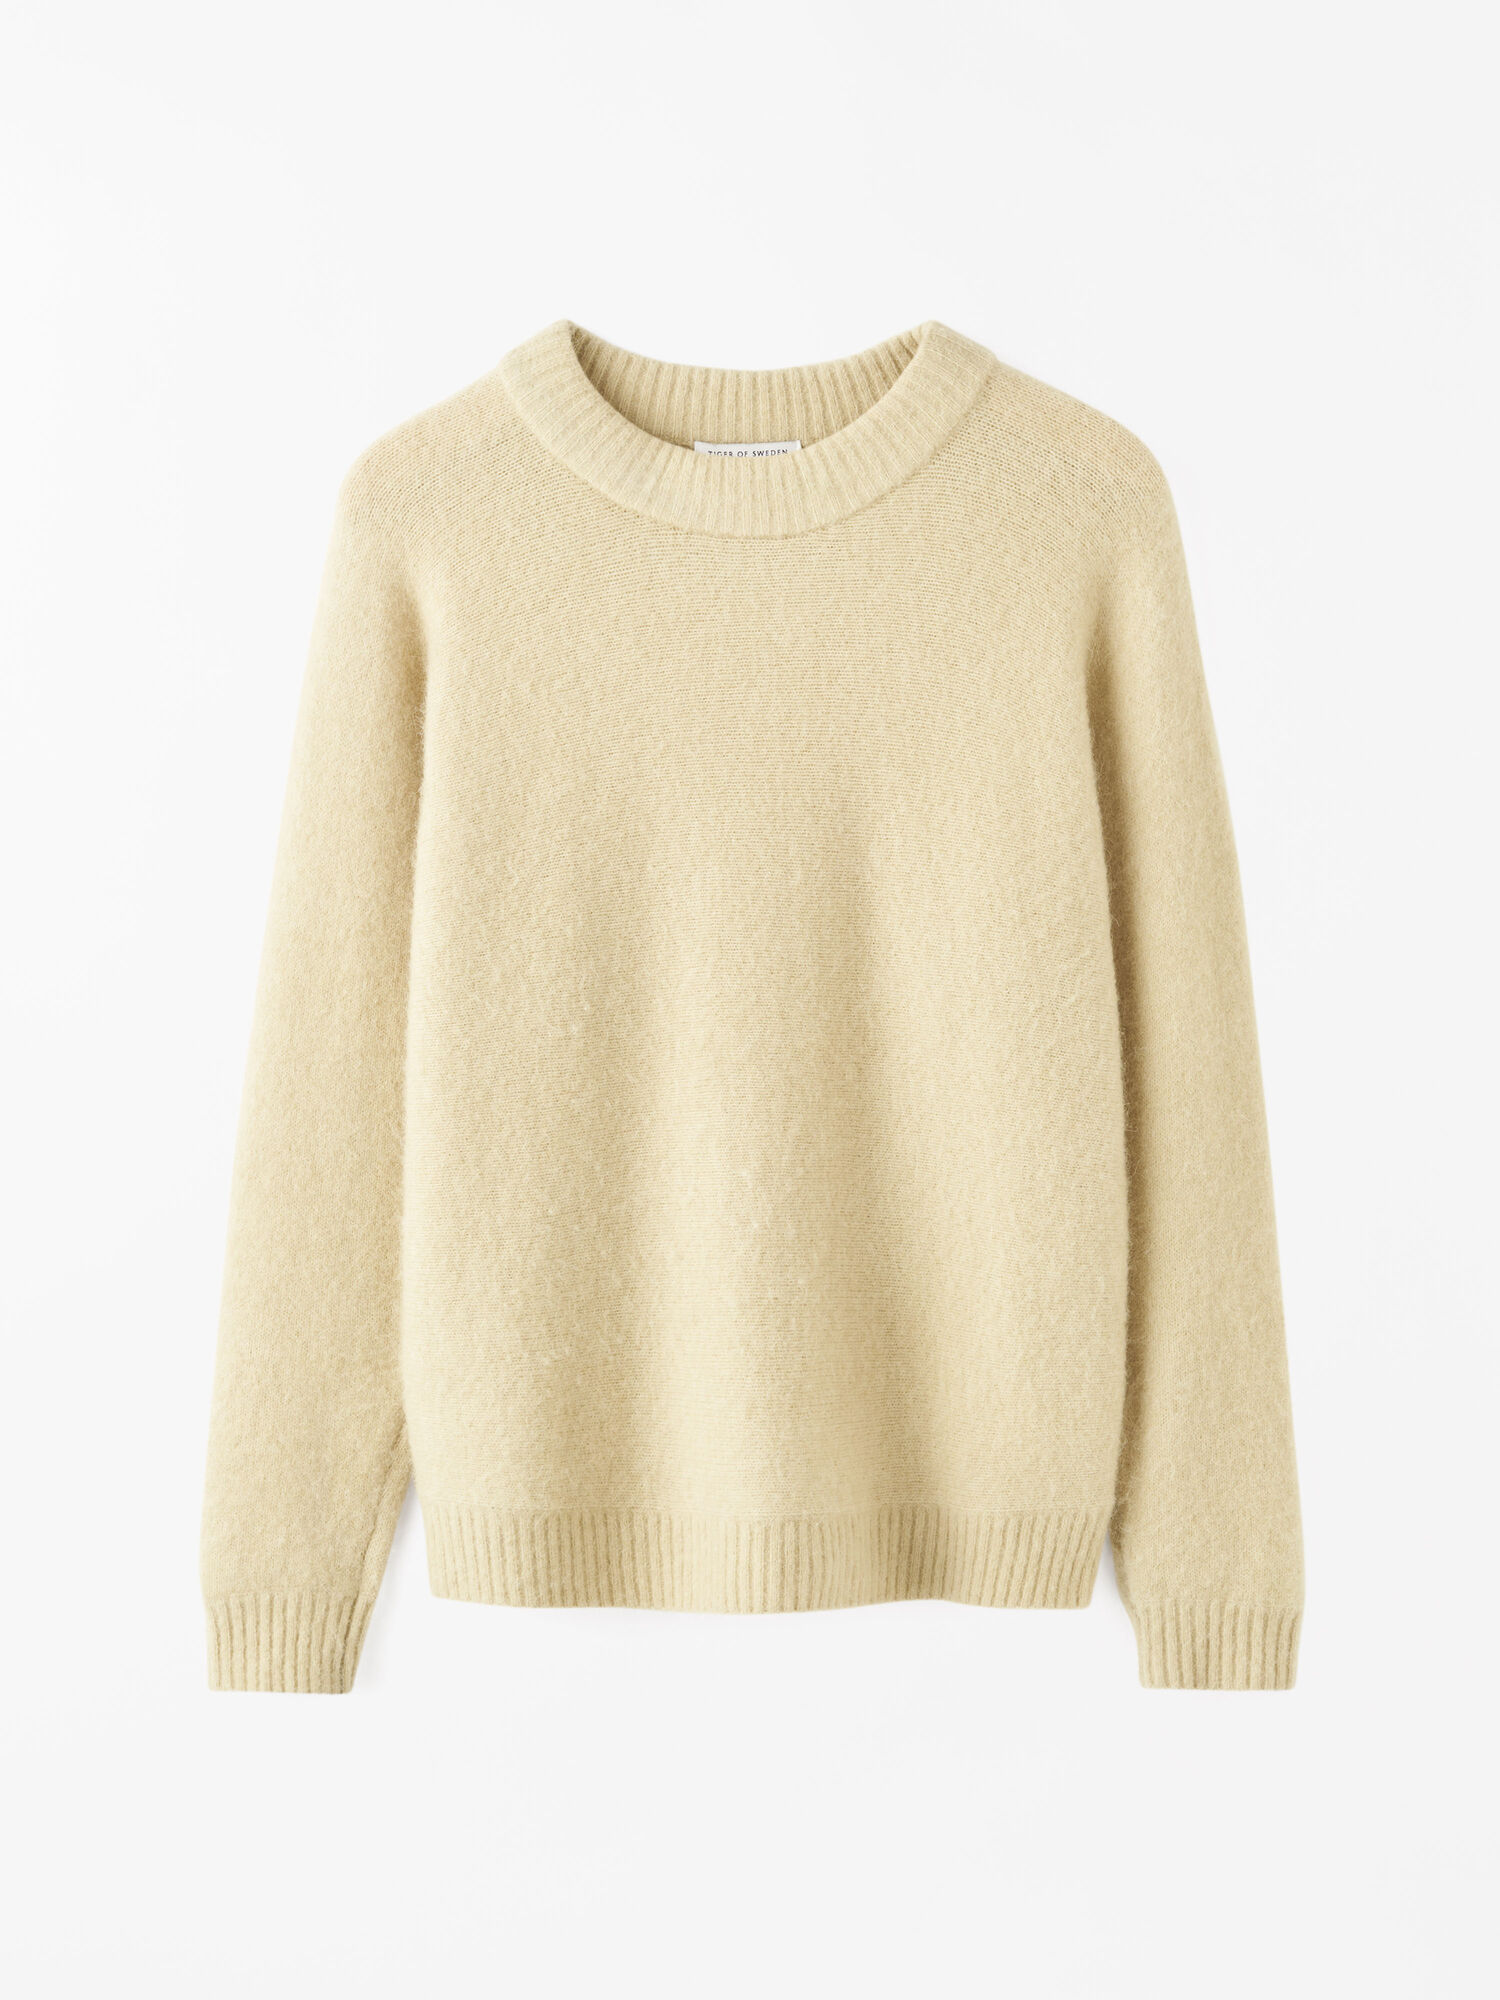 Gwynn Sweater